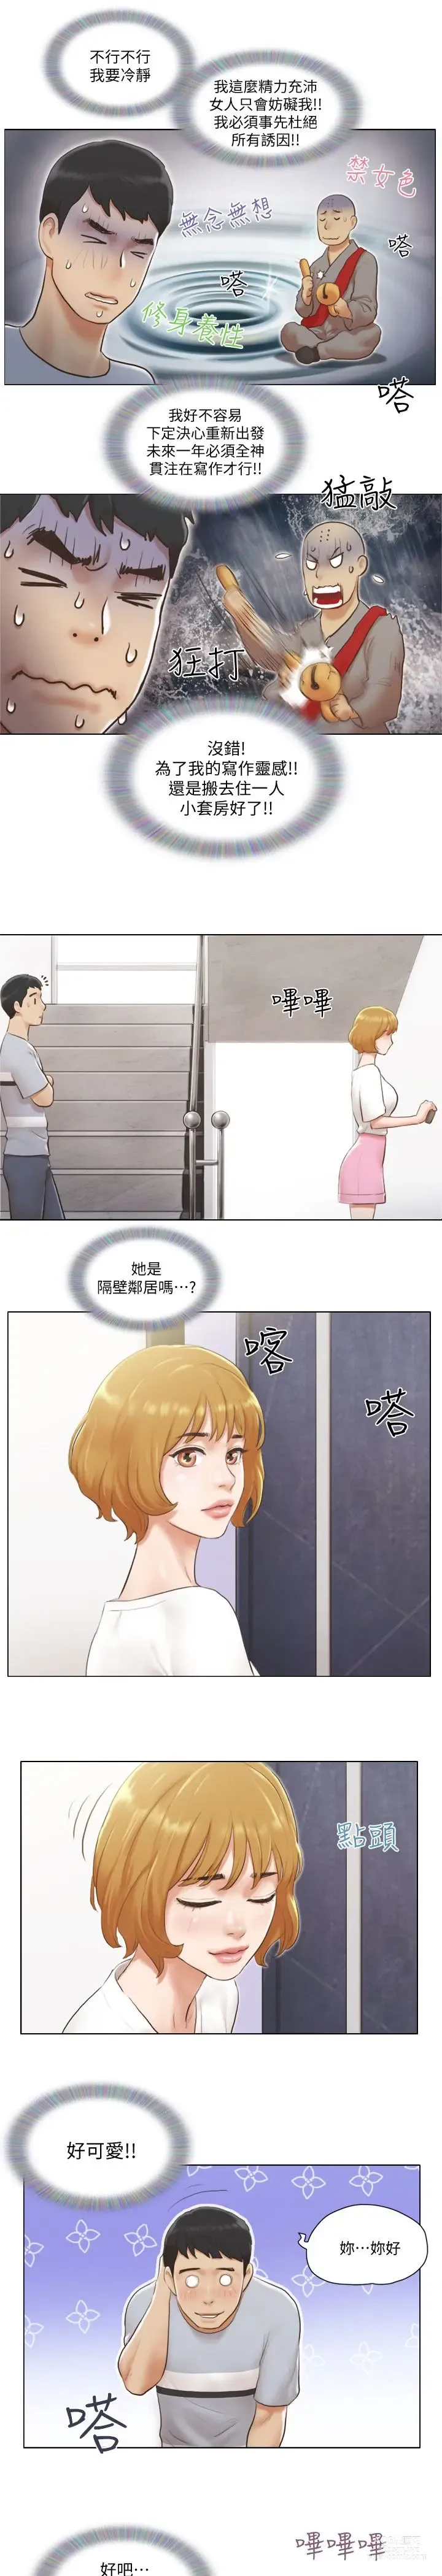 Page 26 of manga 單身女子公寓 1-41 END